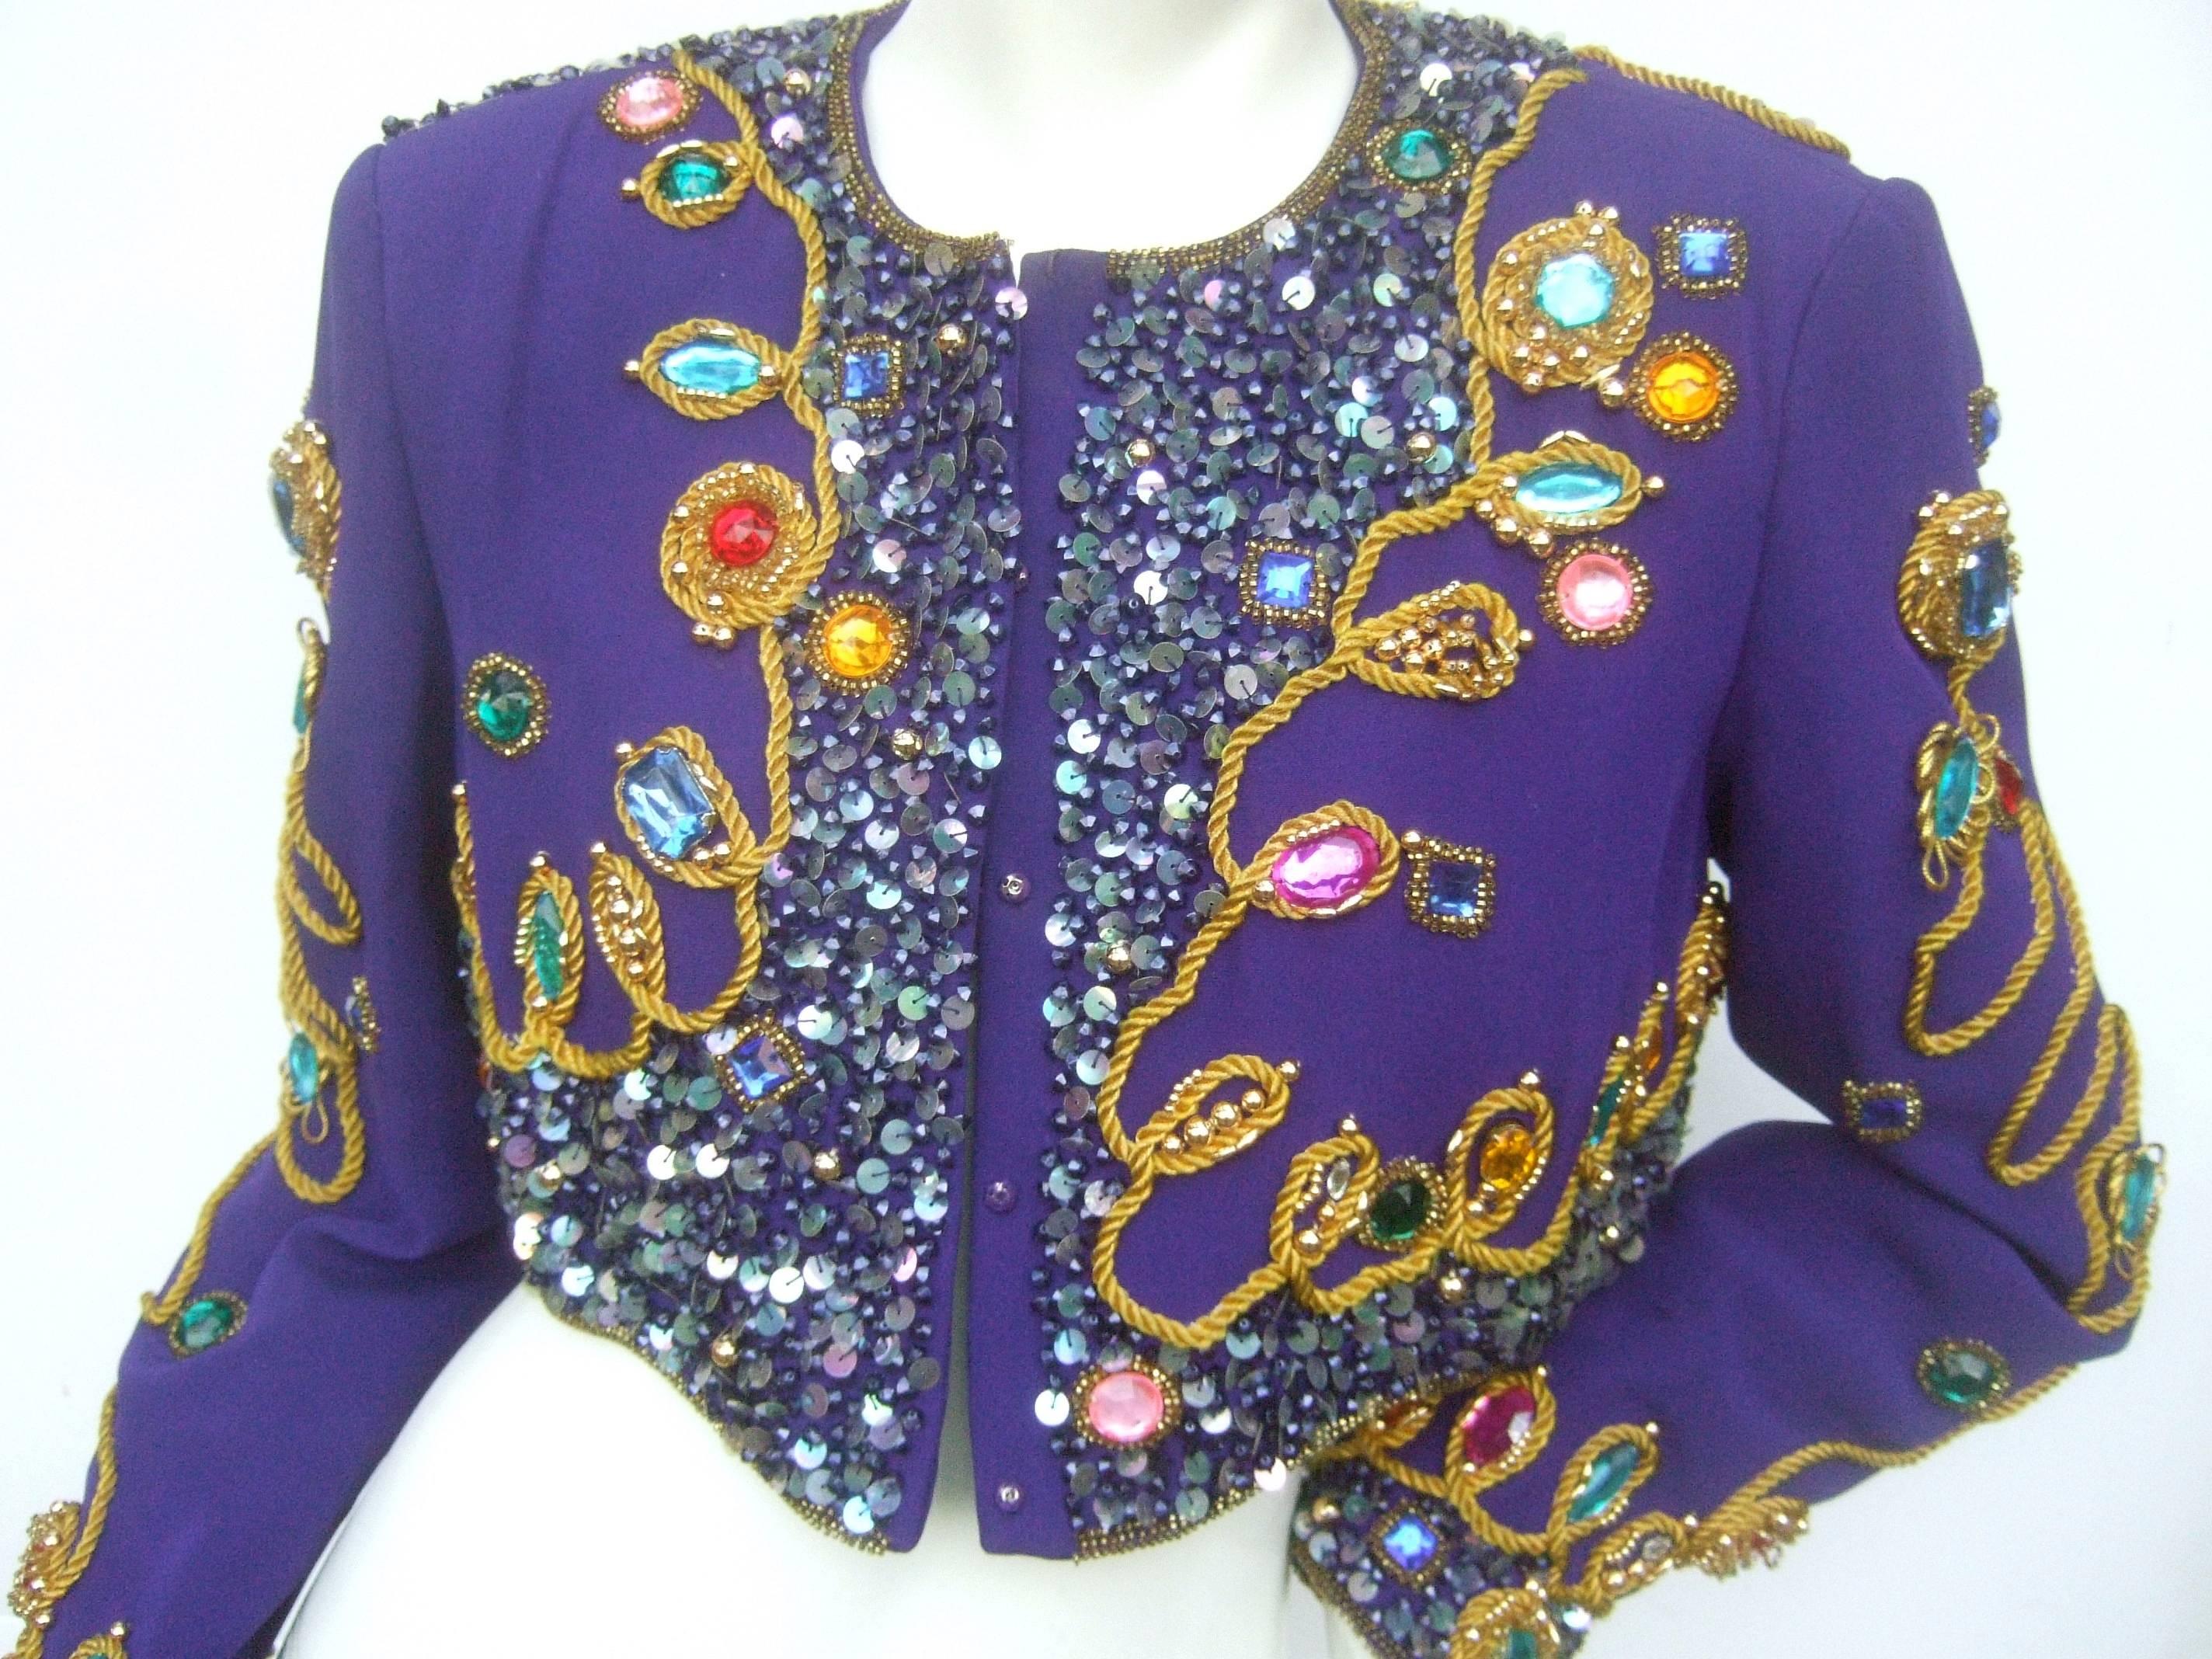 Gris Spectaculaire veste boléro en soie violette incrustée de bijoux c. années 1980